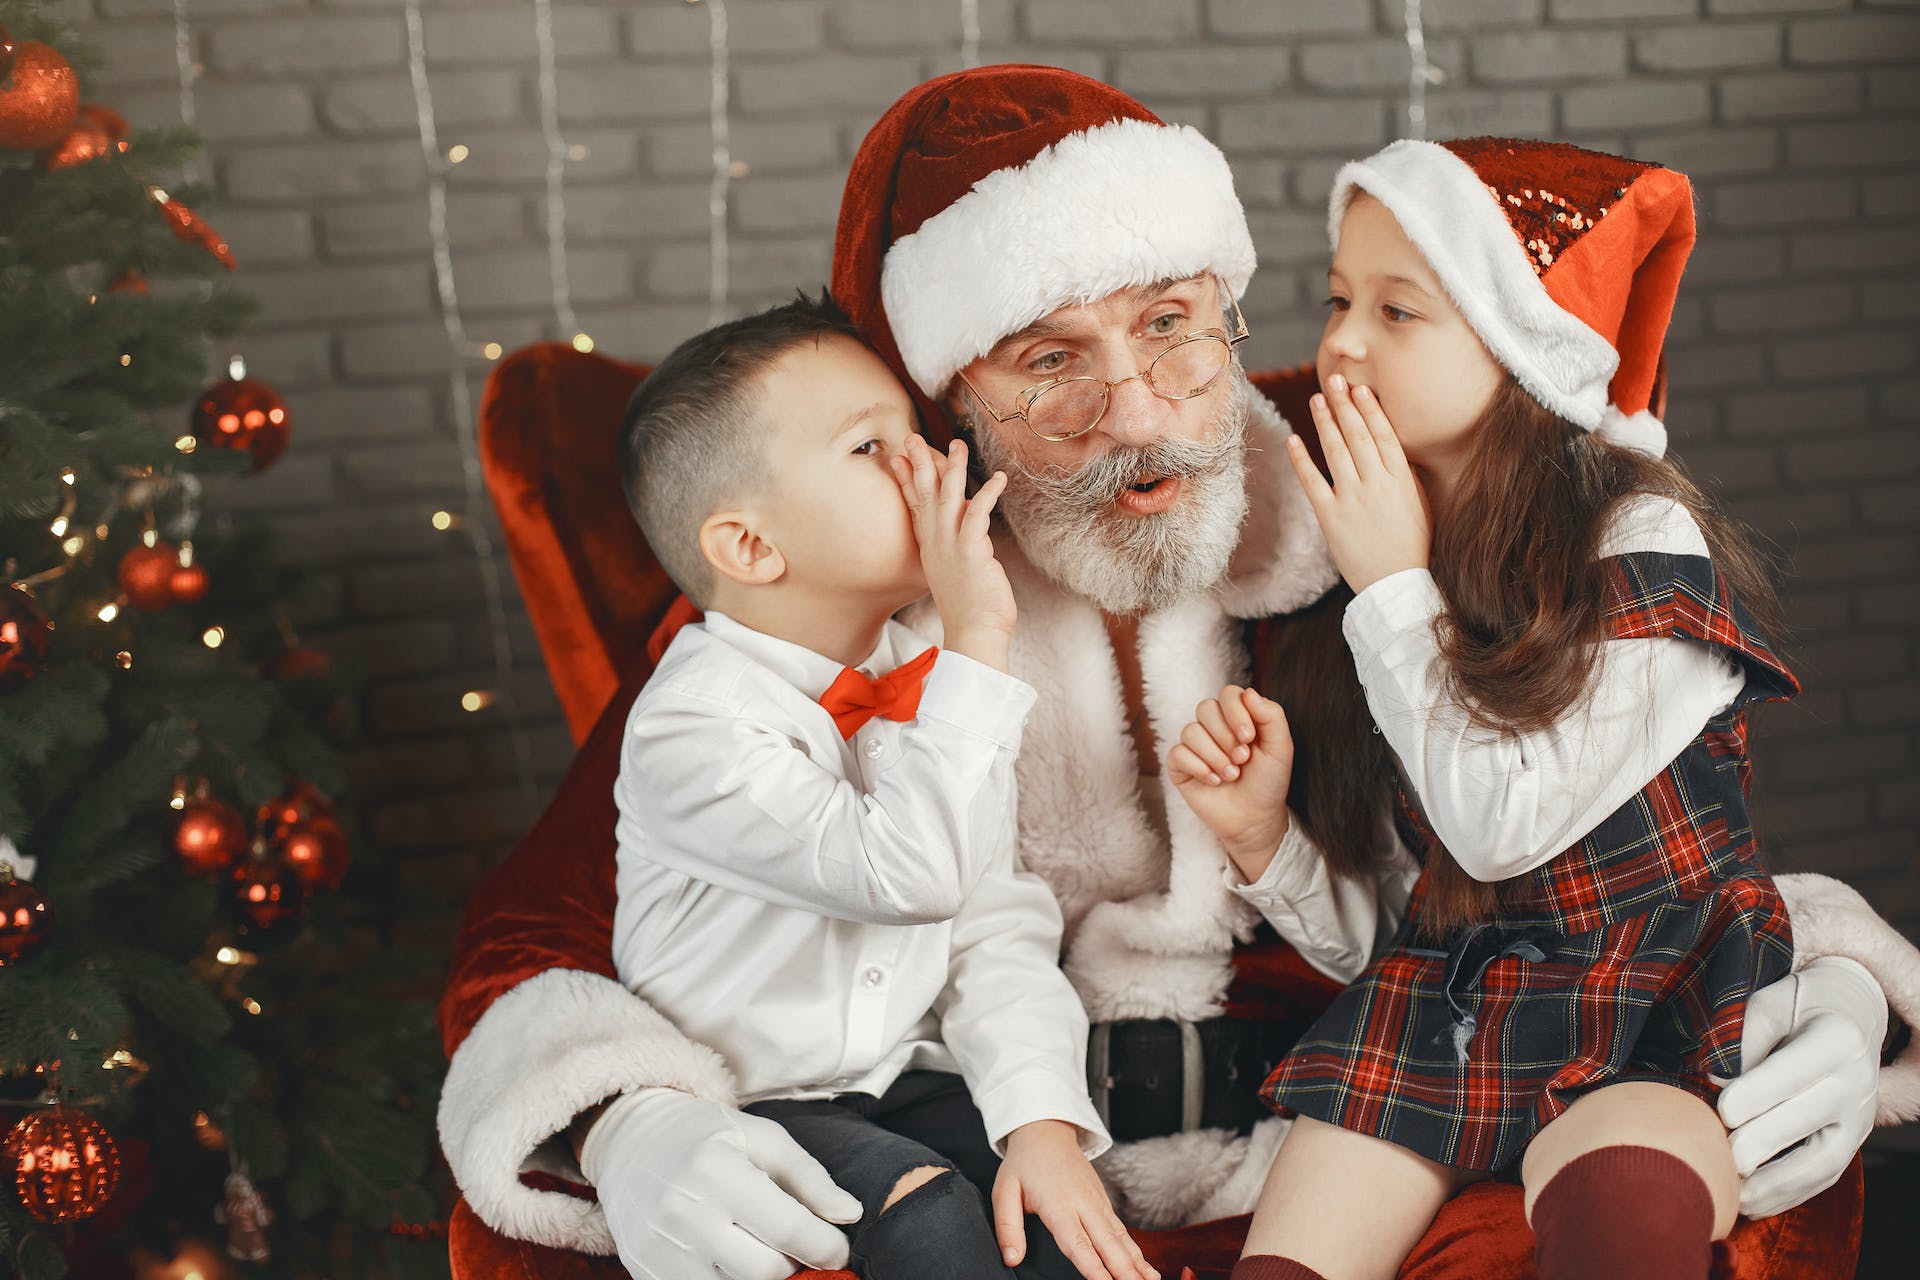 Toddler whispering in santa's ear.